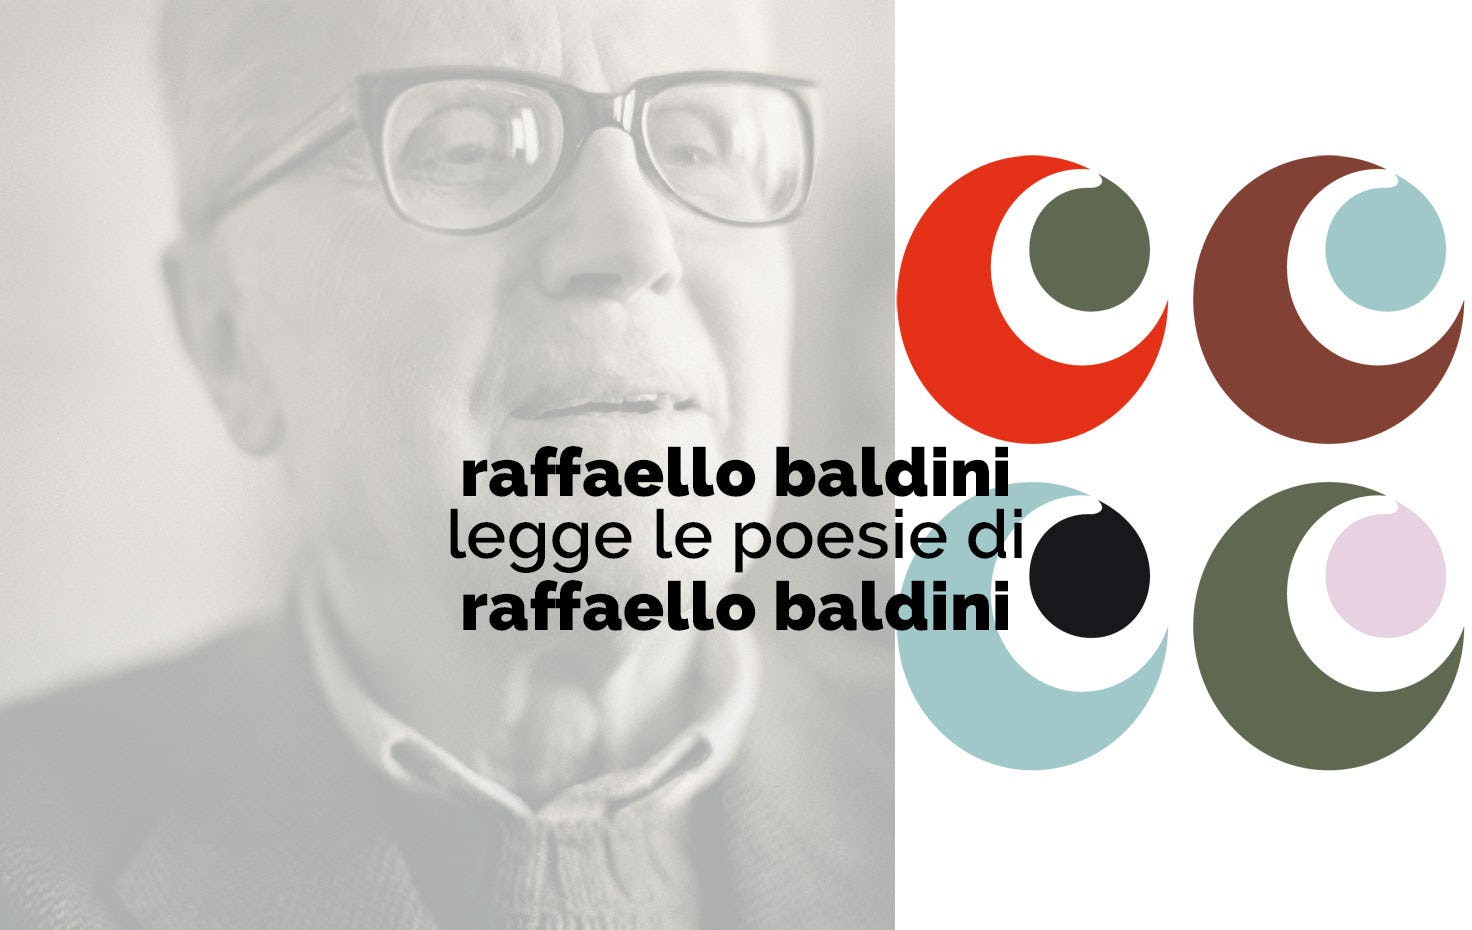 Poesie Di Natale Anni 70.Raffaello Baldini Legge Le Poesie Di Raffaello Baldini In Crowdfunding Su Eppela